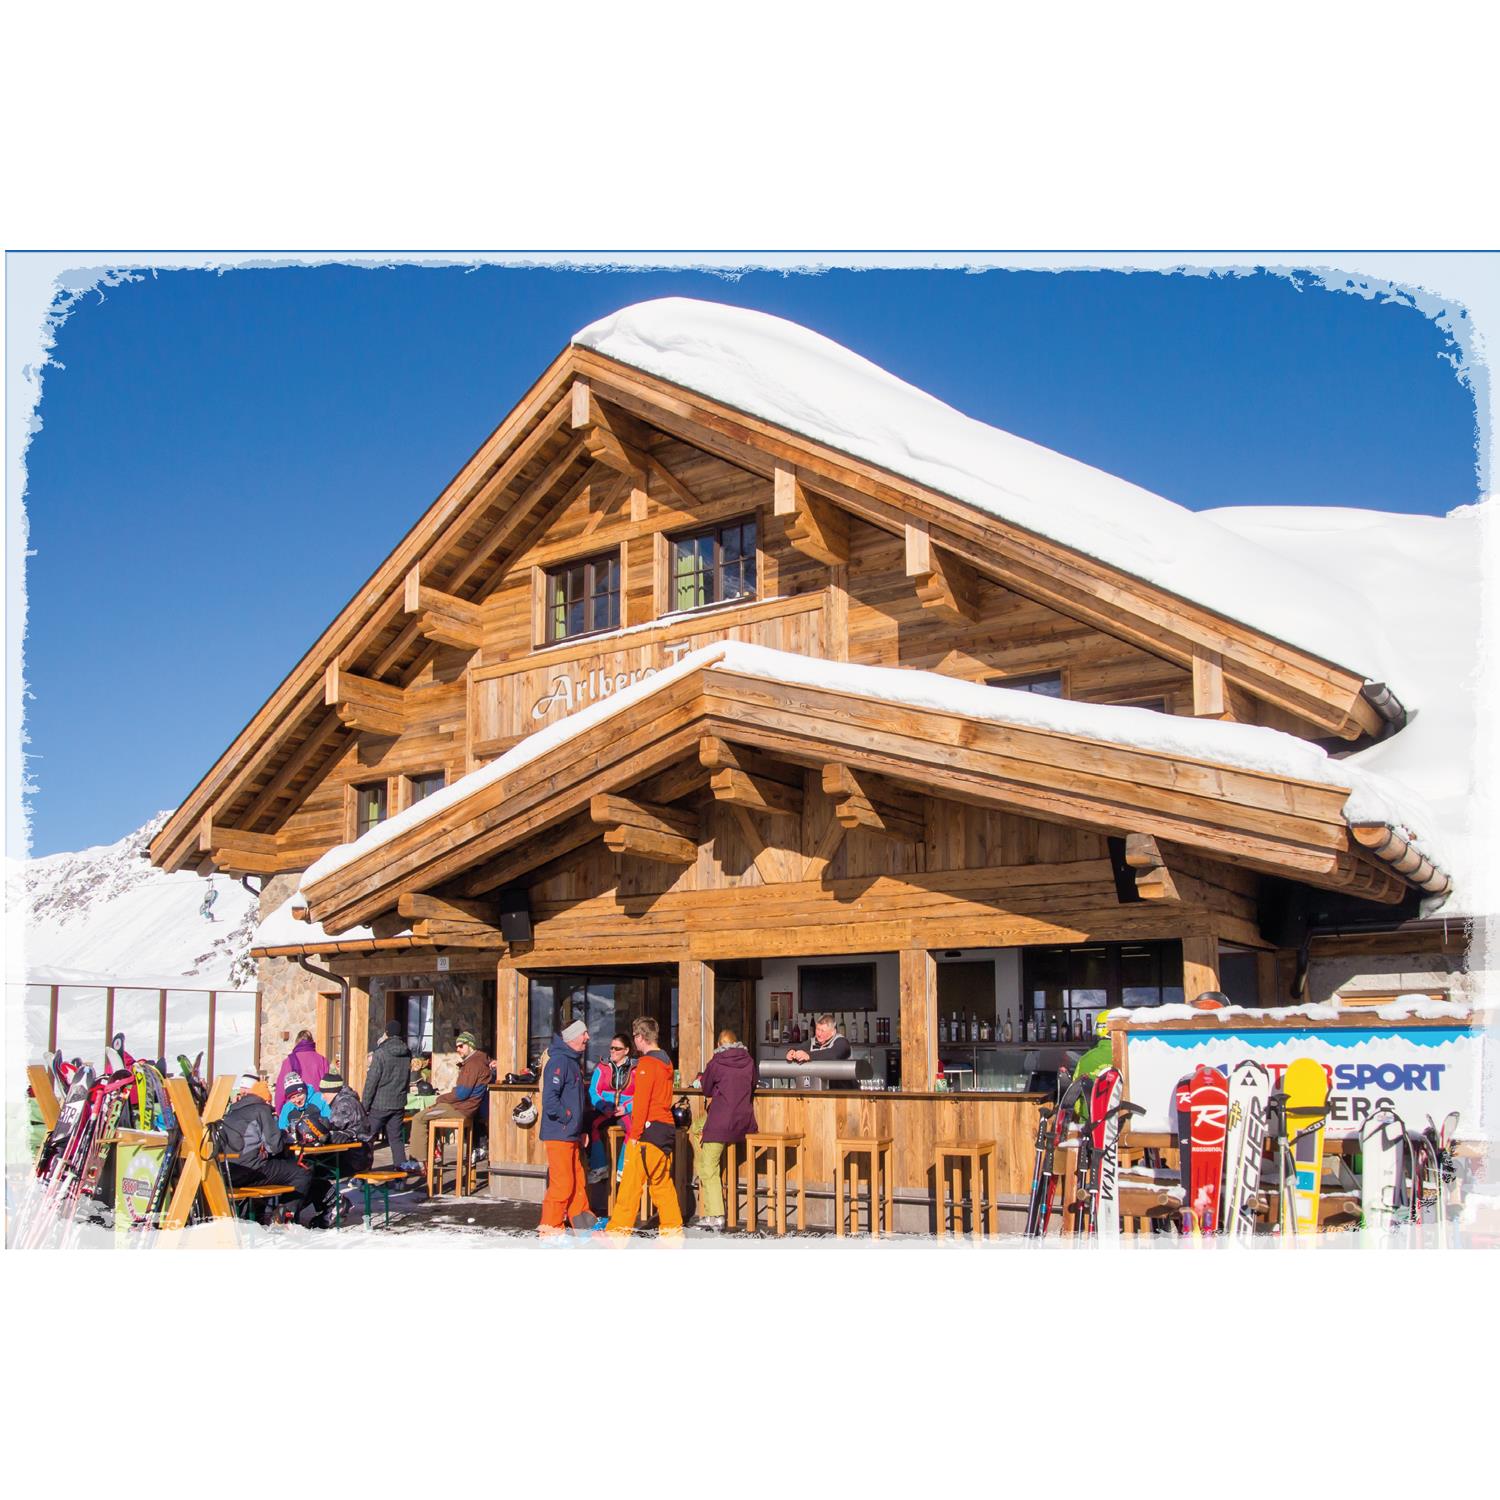 Blechschild - Ski Resort